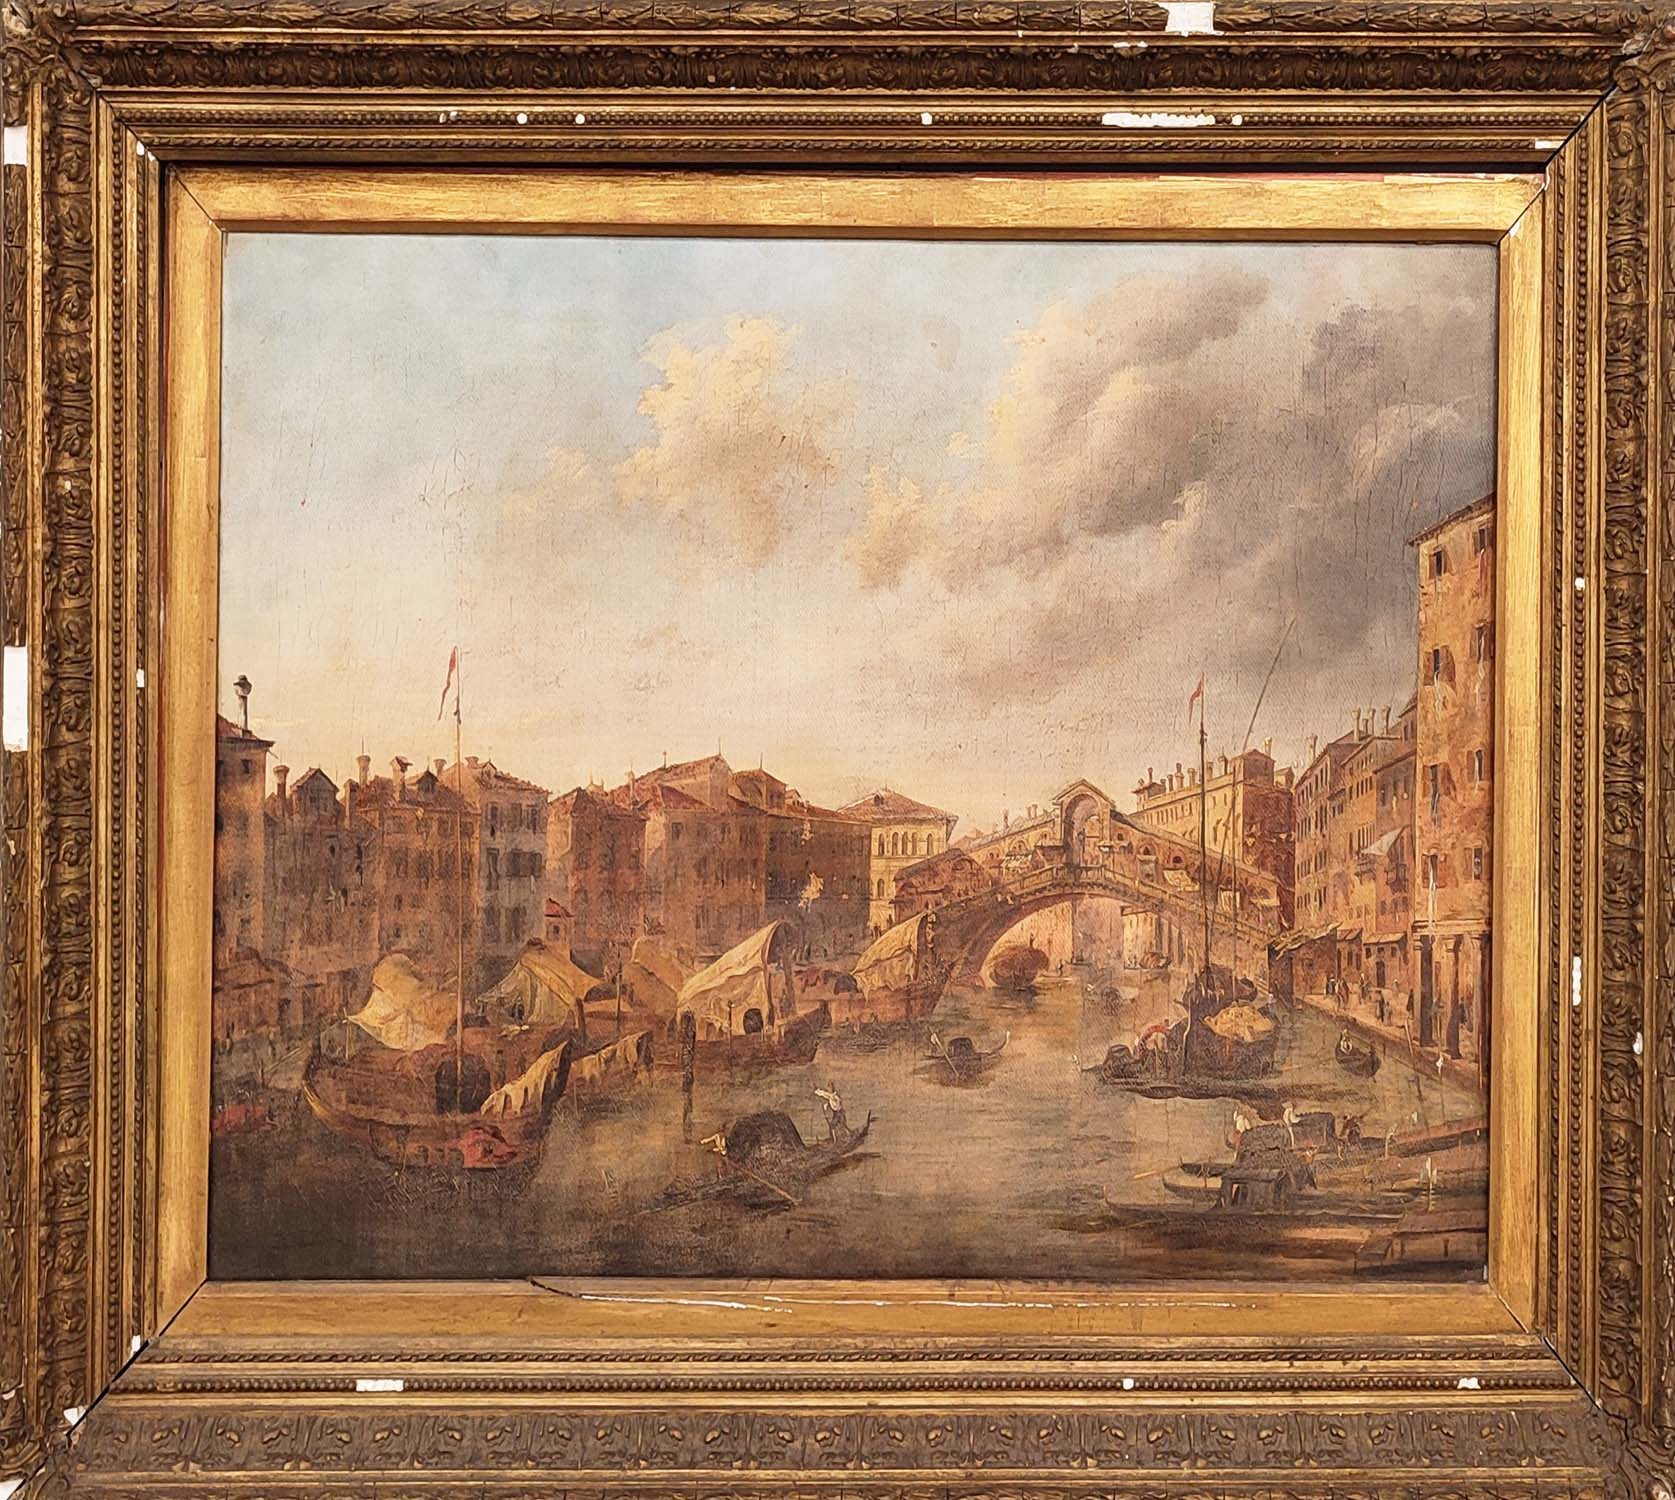 MANNER OF GIOVANNI BATTISTA PIRANESI (Italian 1720-1778), 'The Rialto Bridge on the Grand Canal,